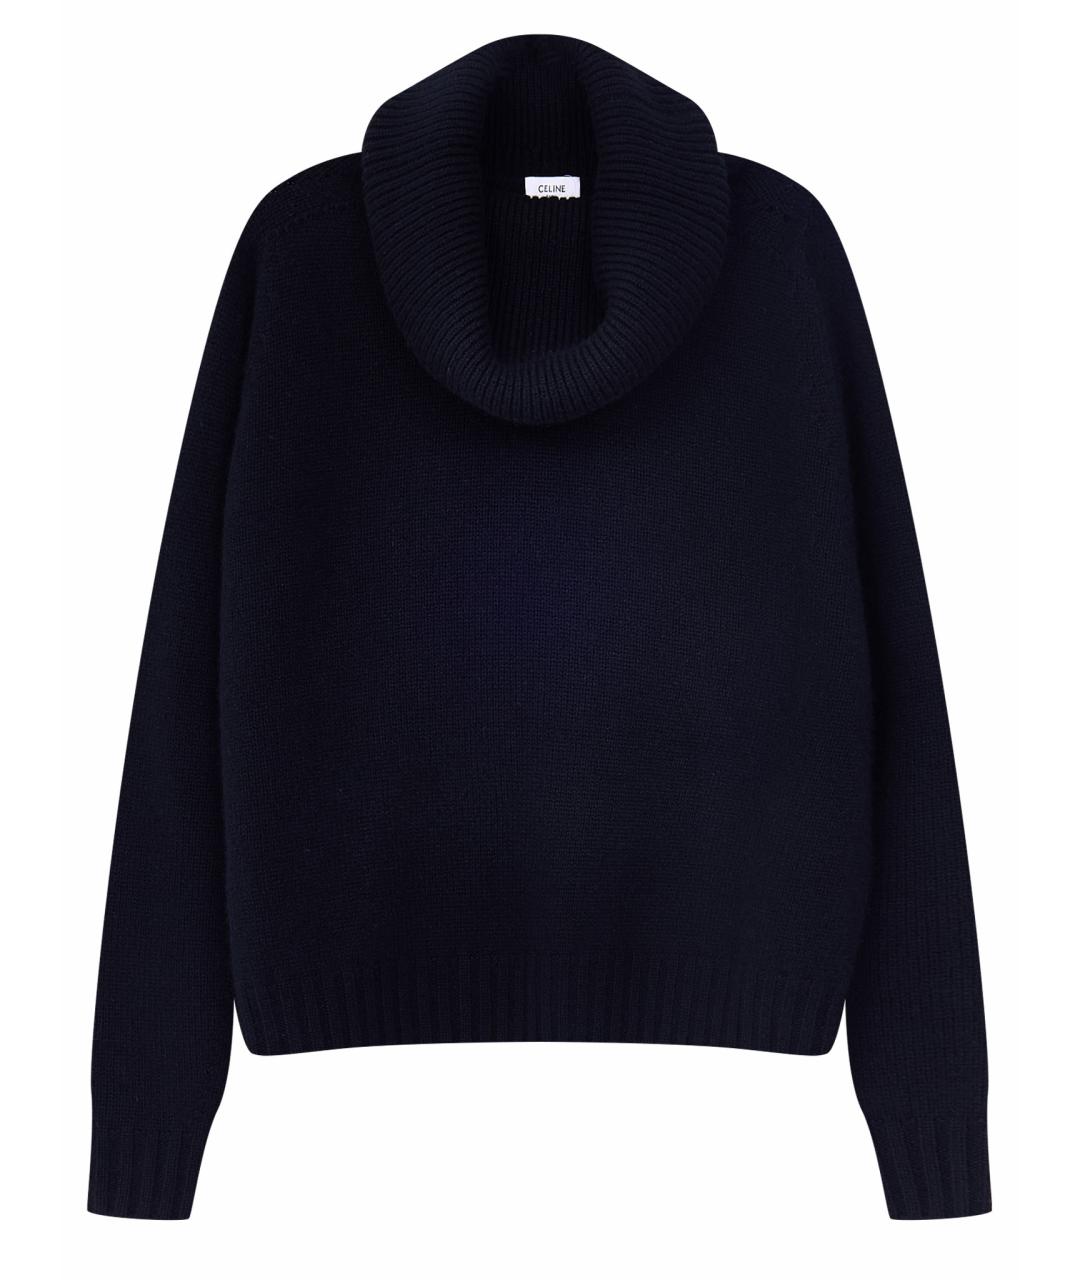 CELINE PRE-OWNED Черный кашемировый джемпер / свитер, фото 1